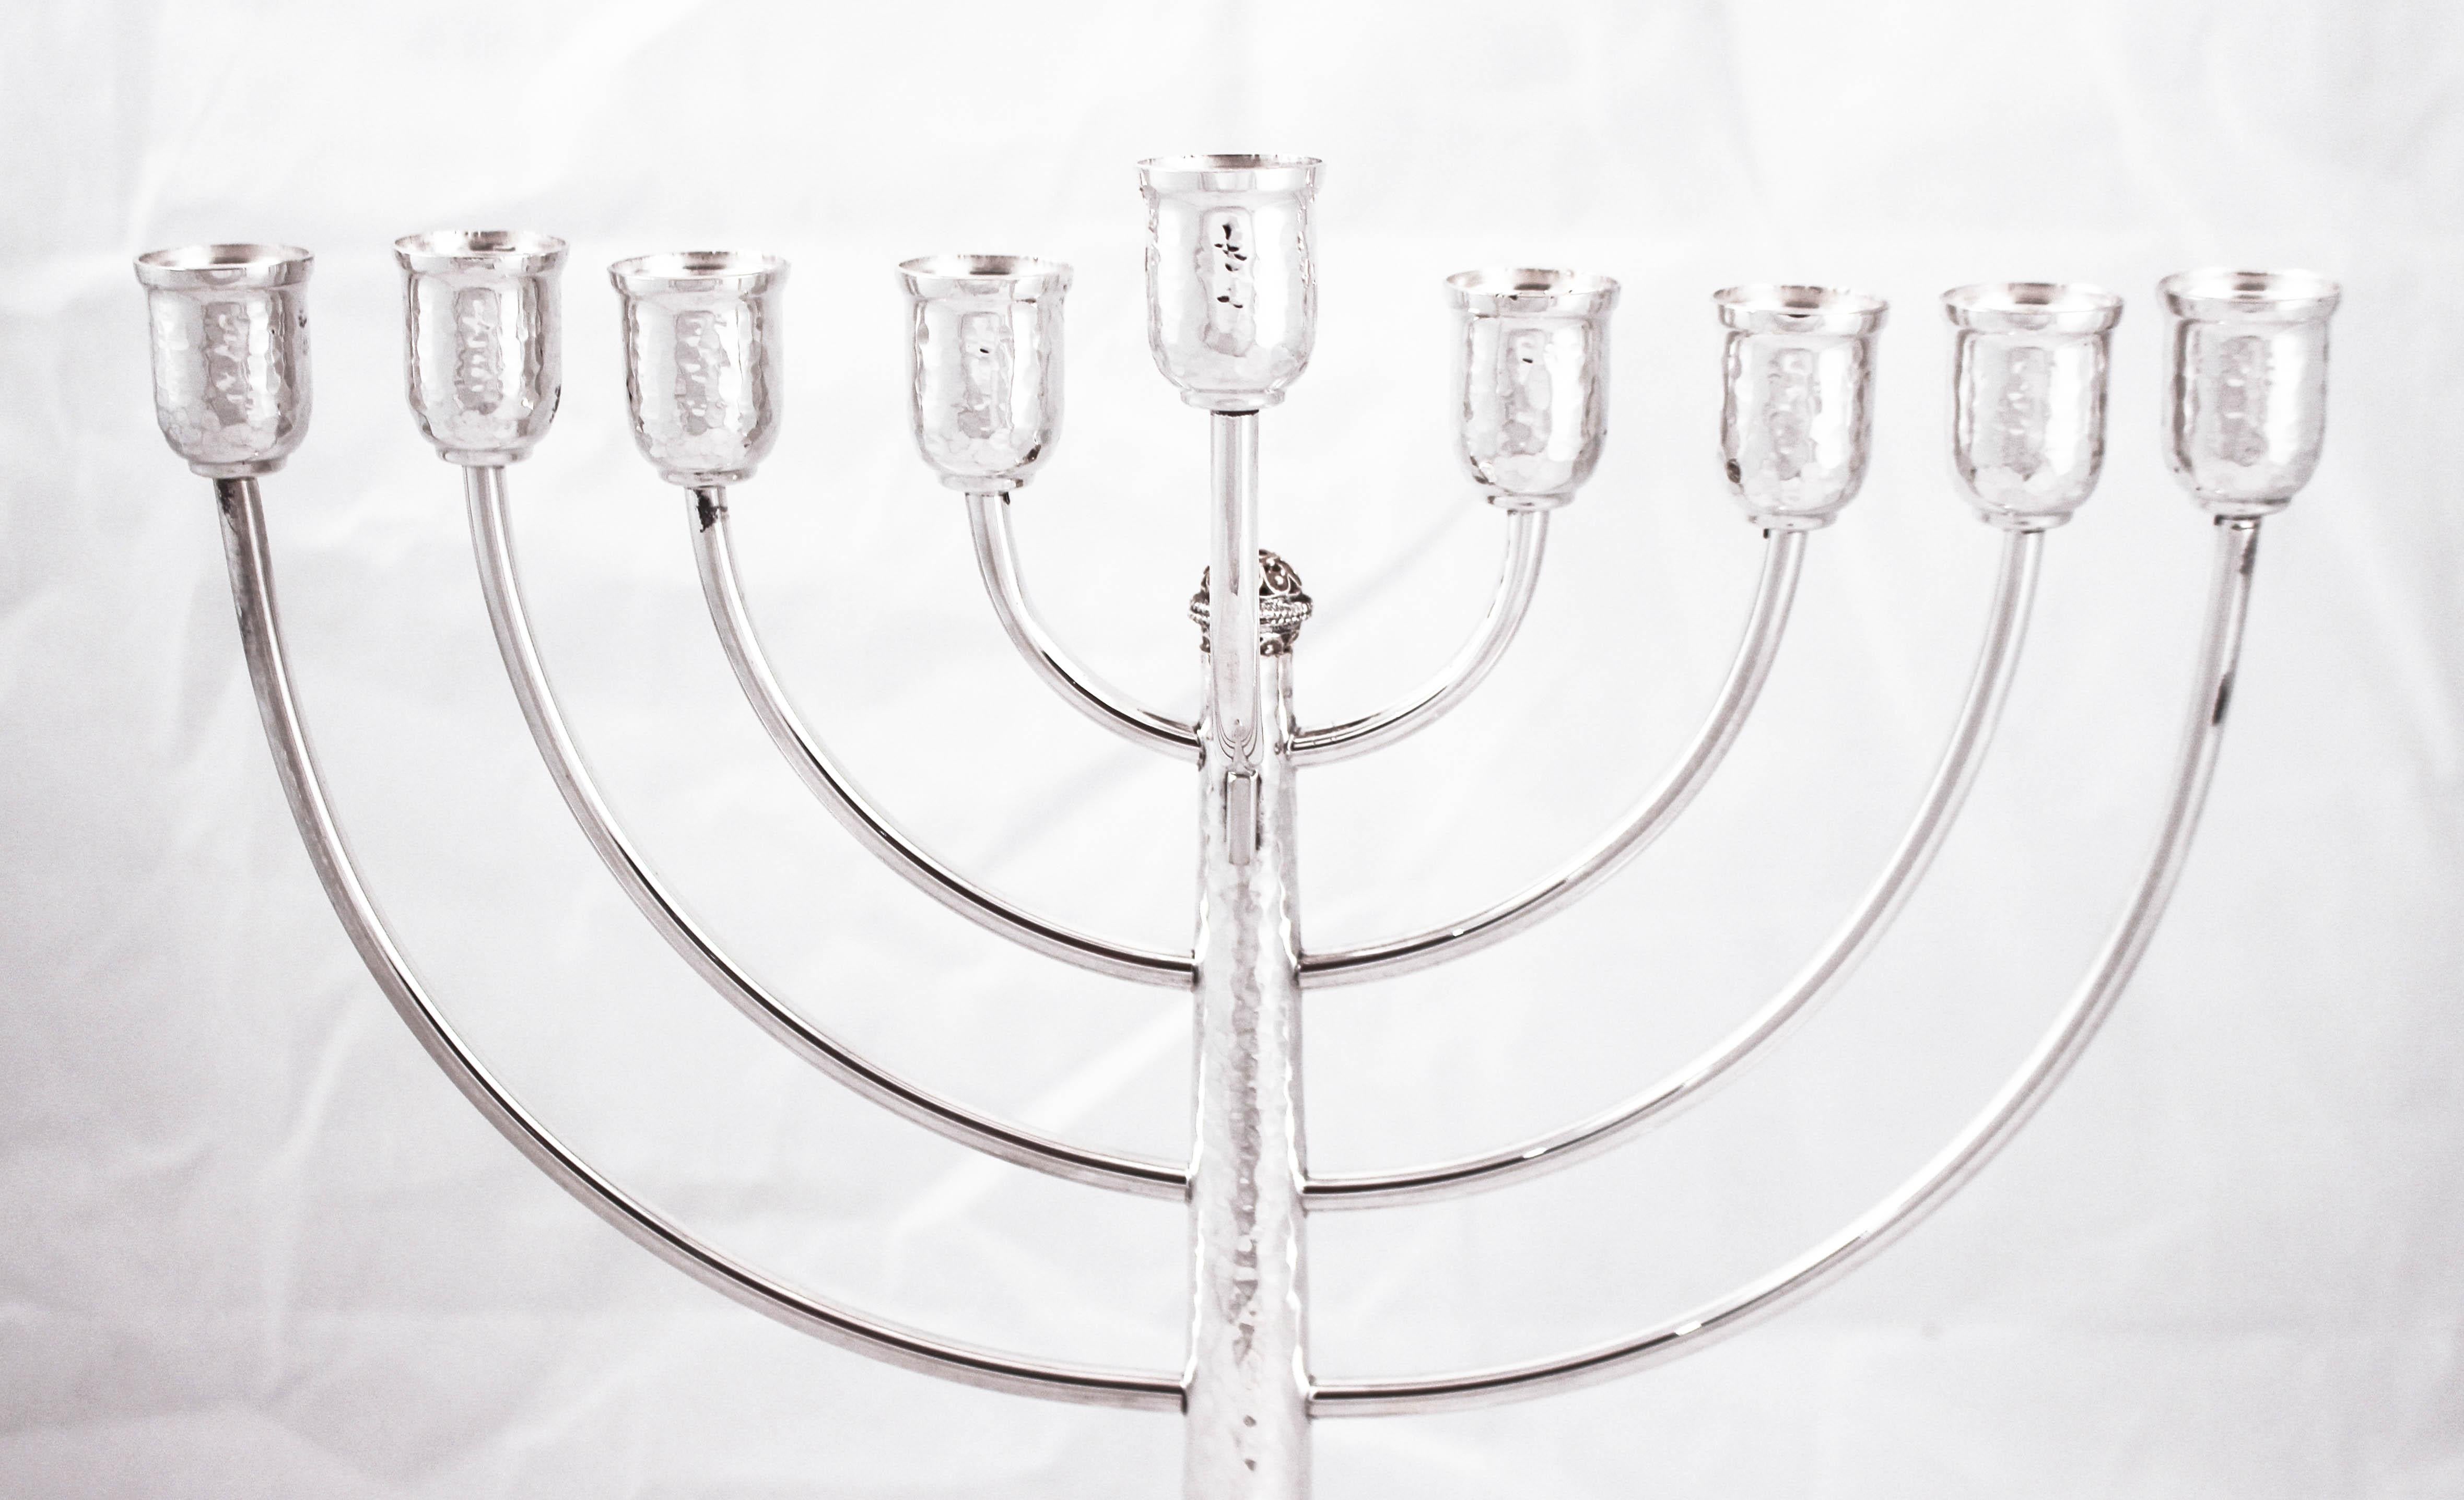 Wir freuen uns, diese Menora aus Sterlingsilber anbieten zu können, die in Israel hergestellt wird. Das Lichterfest, wie Chanukka oft genannt wird, wird durch das Anzünden der Menora in jeder der acht Nächte des Festes kommentiert. Was gibt es